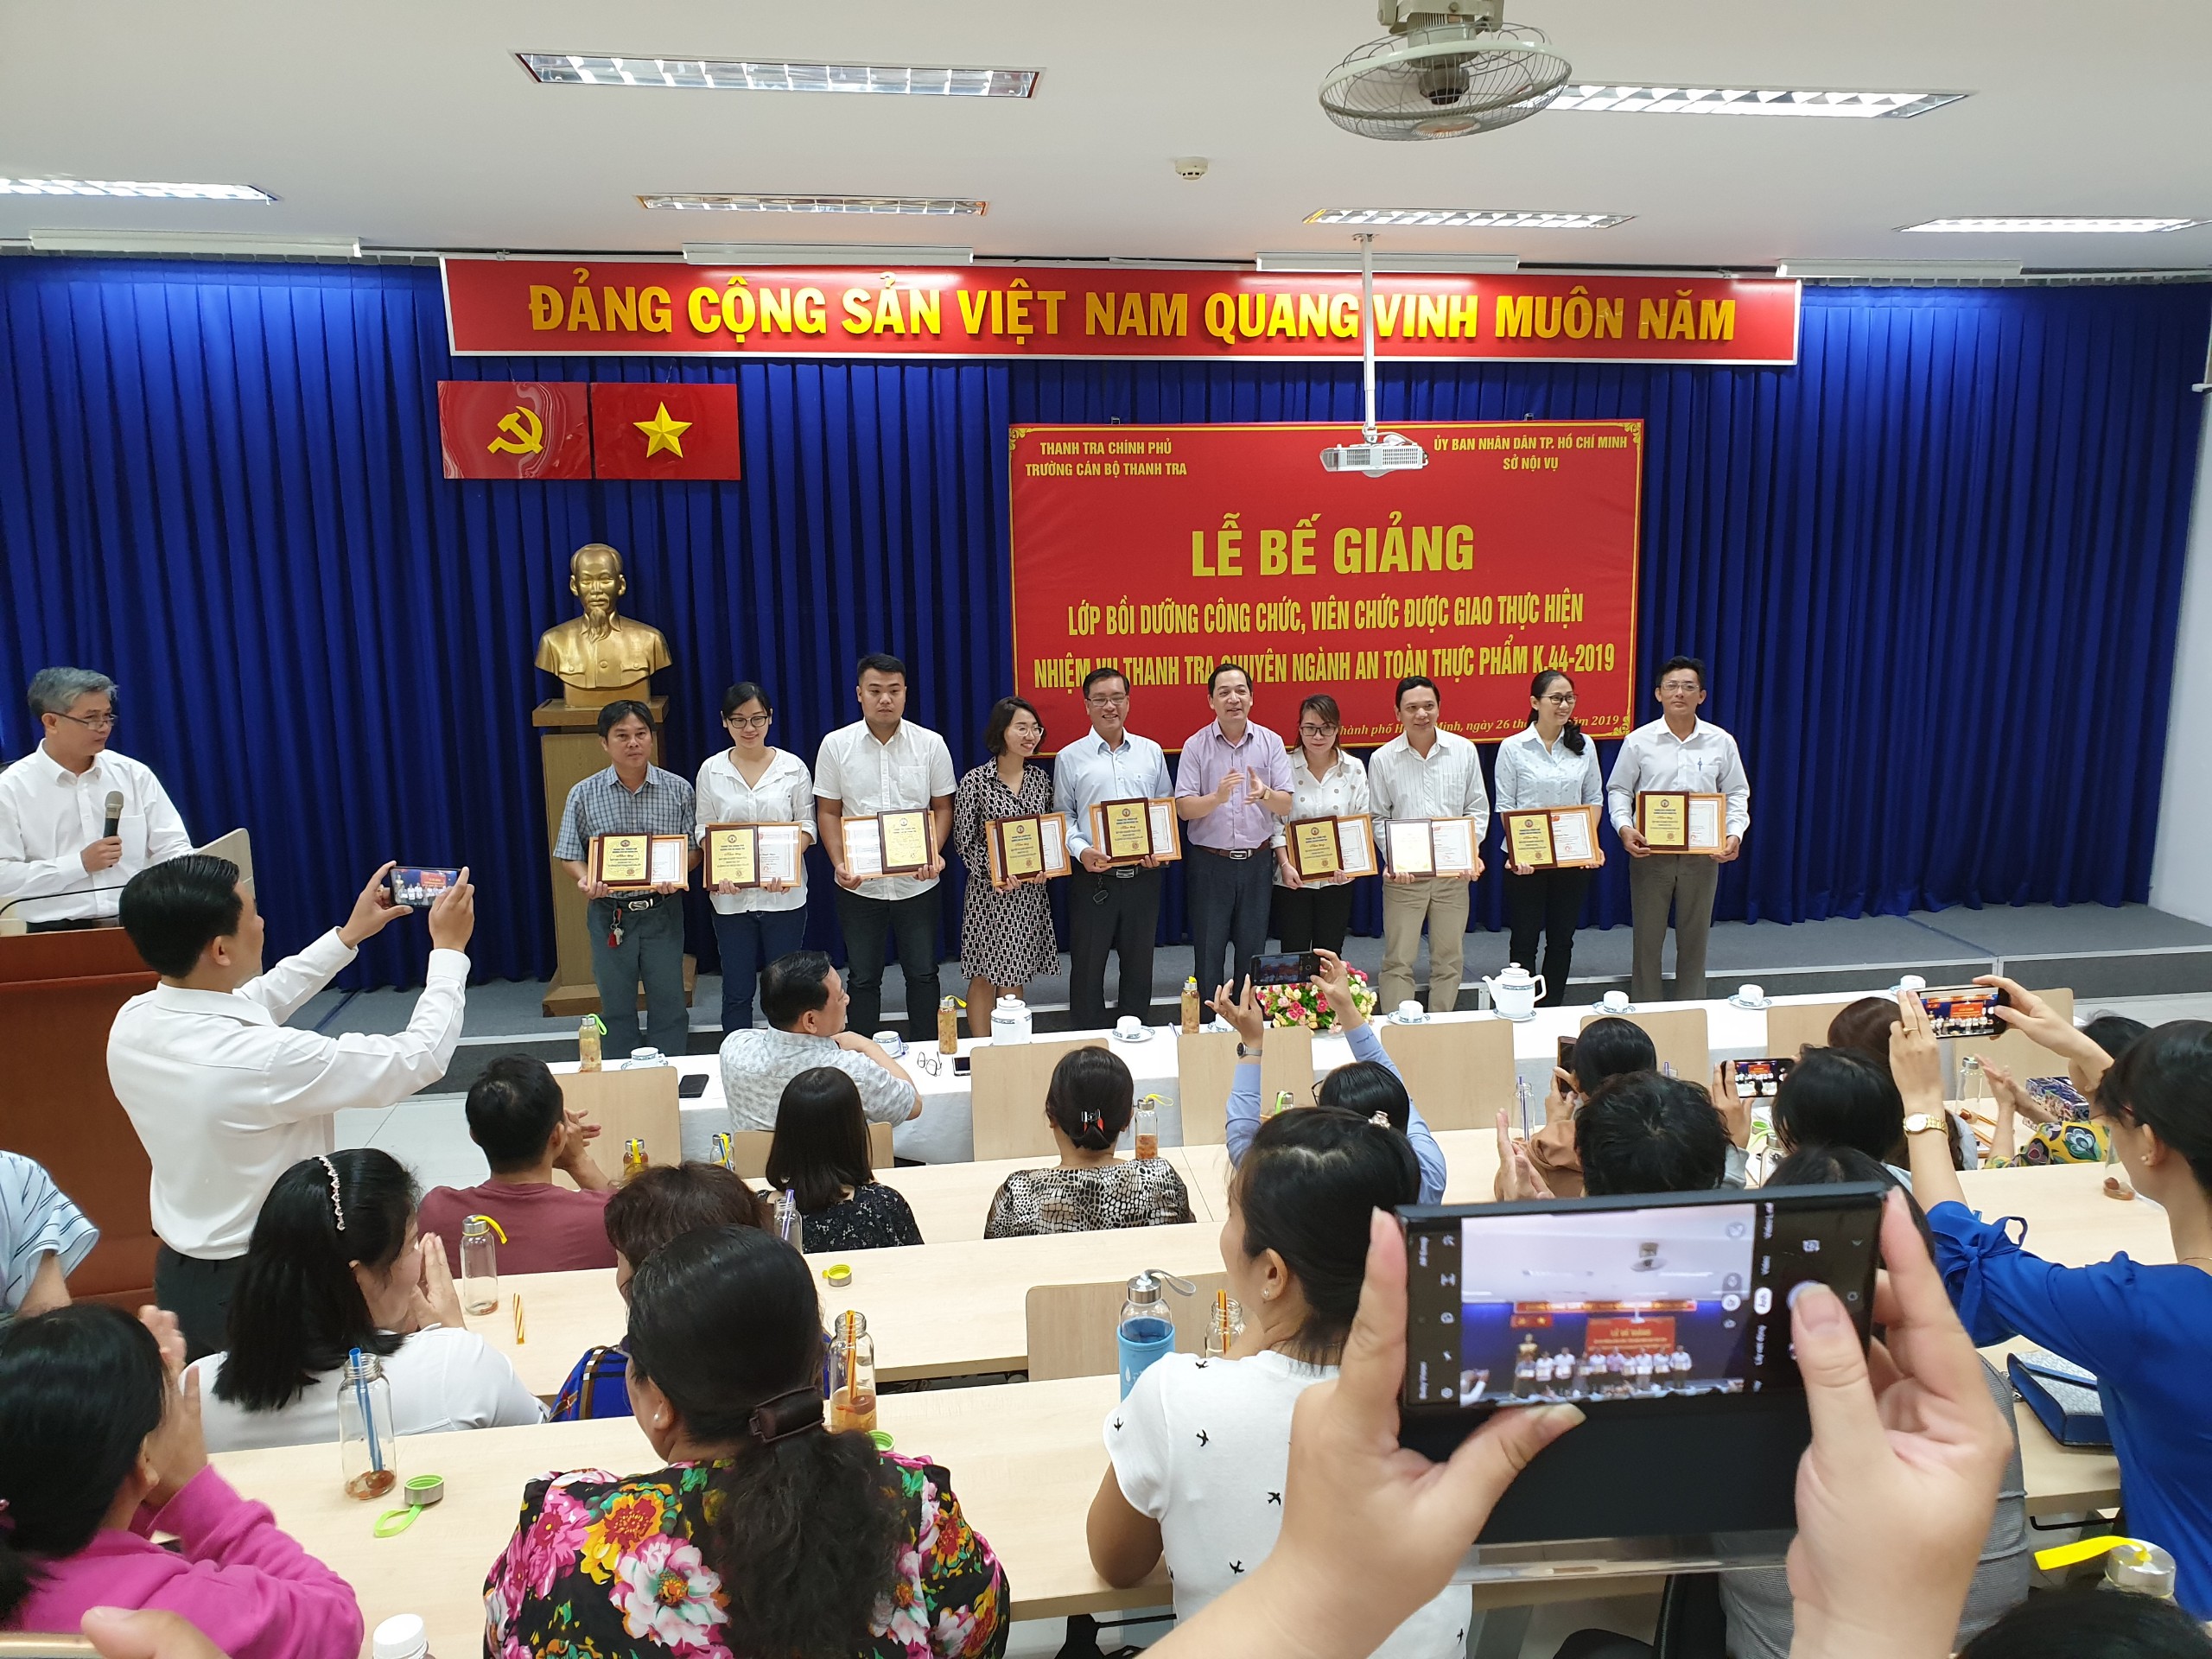 TS Nguyễn Huy Hoàng Phó Hiệu trưởng nhà trường trao giấy ken cho học viên